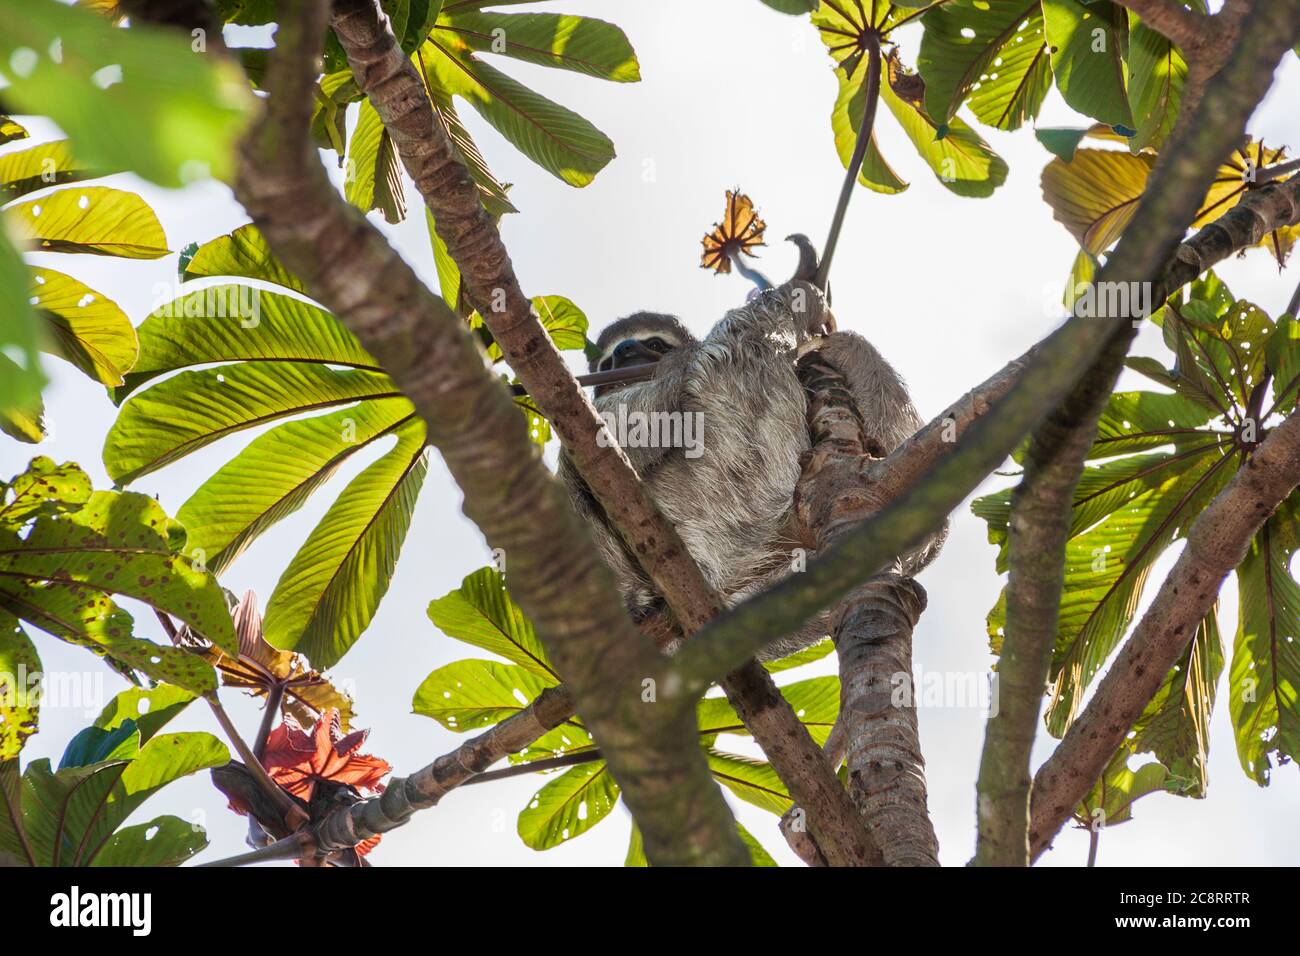 Sloth in Ceccopia albero top presso l'istituto di formazione InBio biodiversità in Costa Rica. Foto Stock